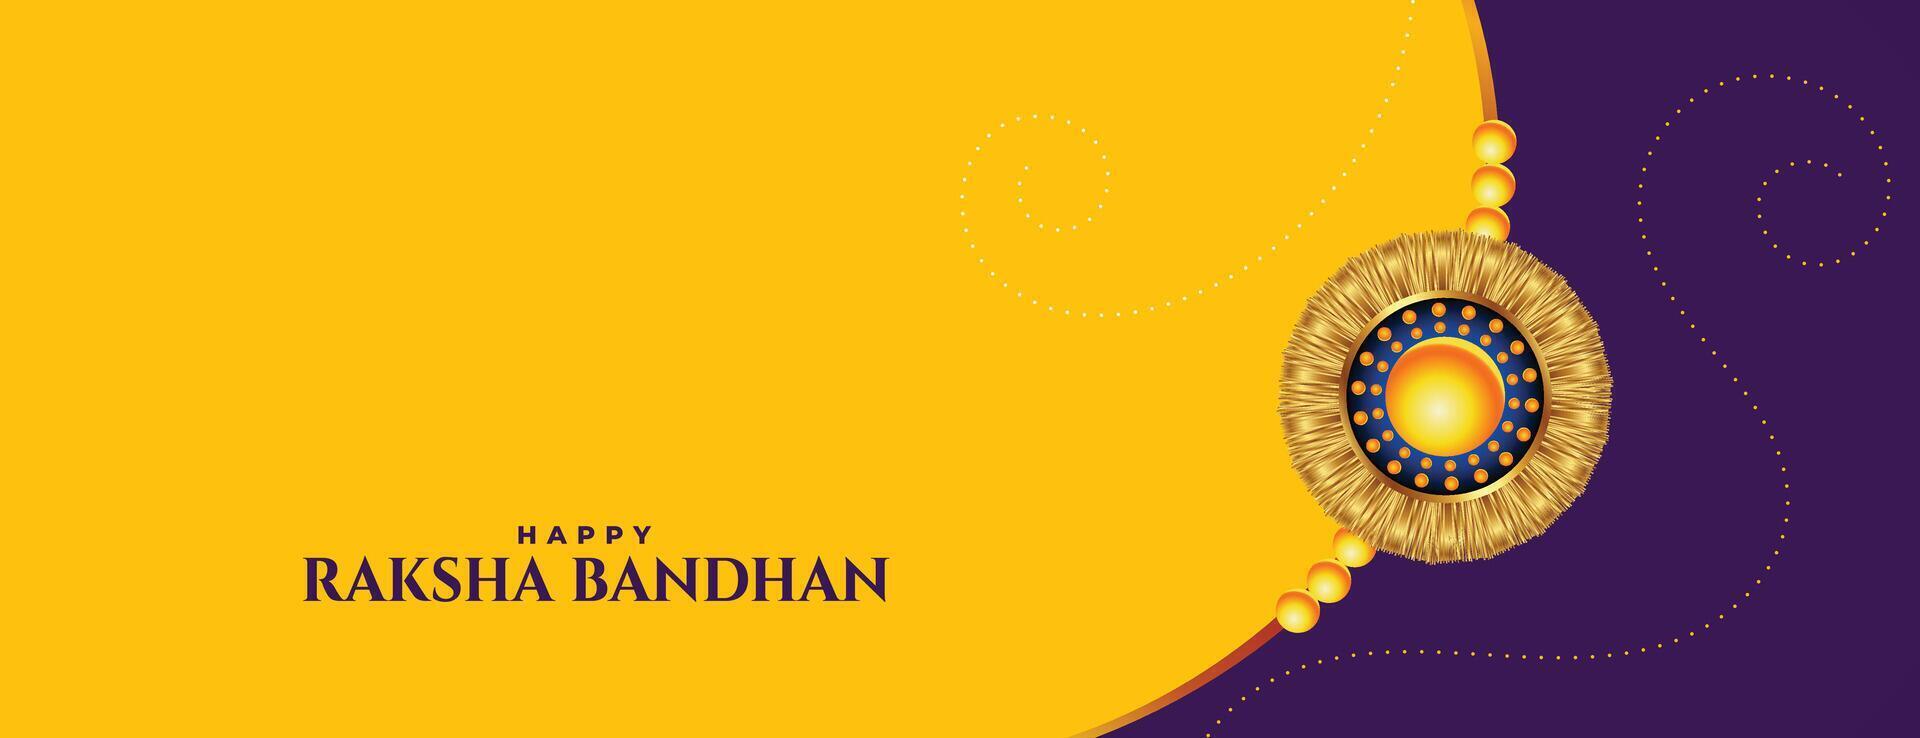 raksha bandhan yellow banner with rakhi design vector